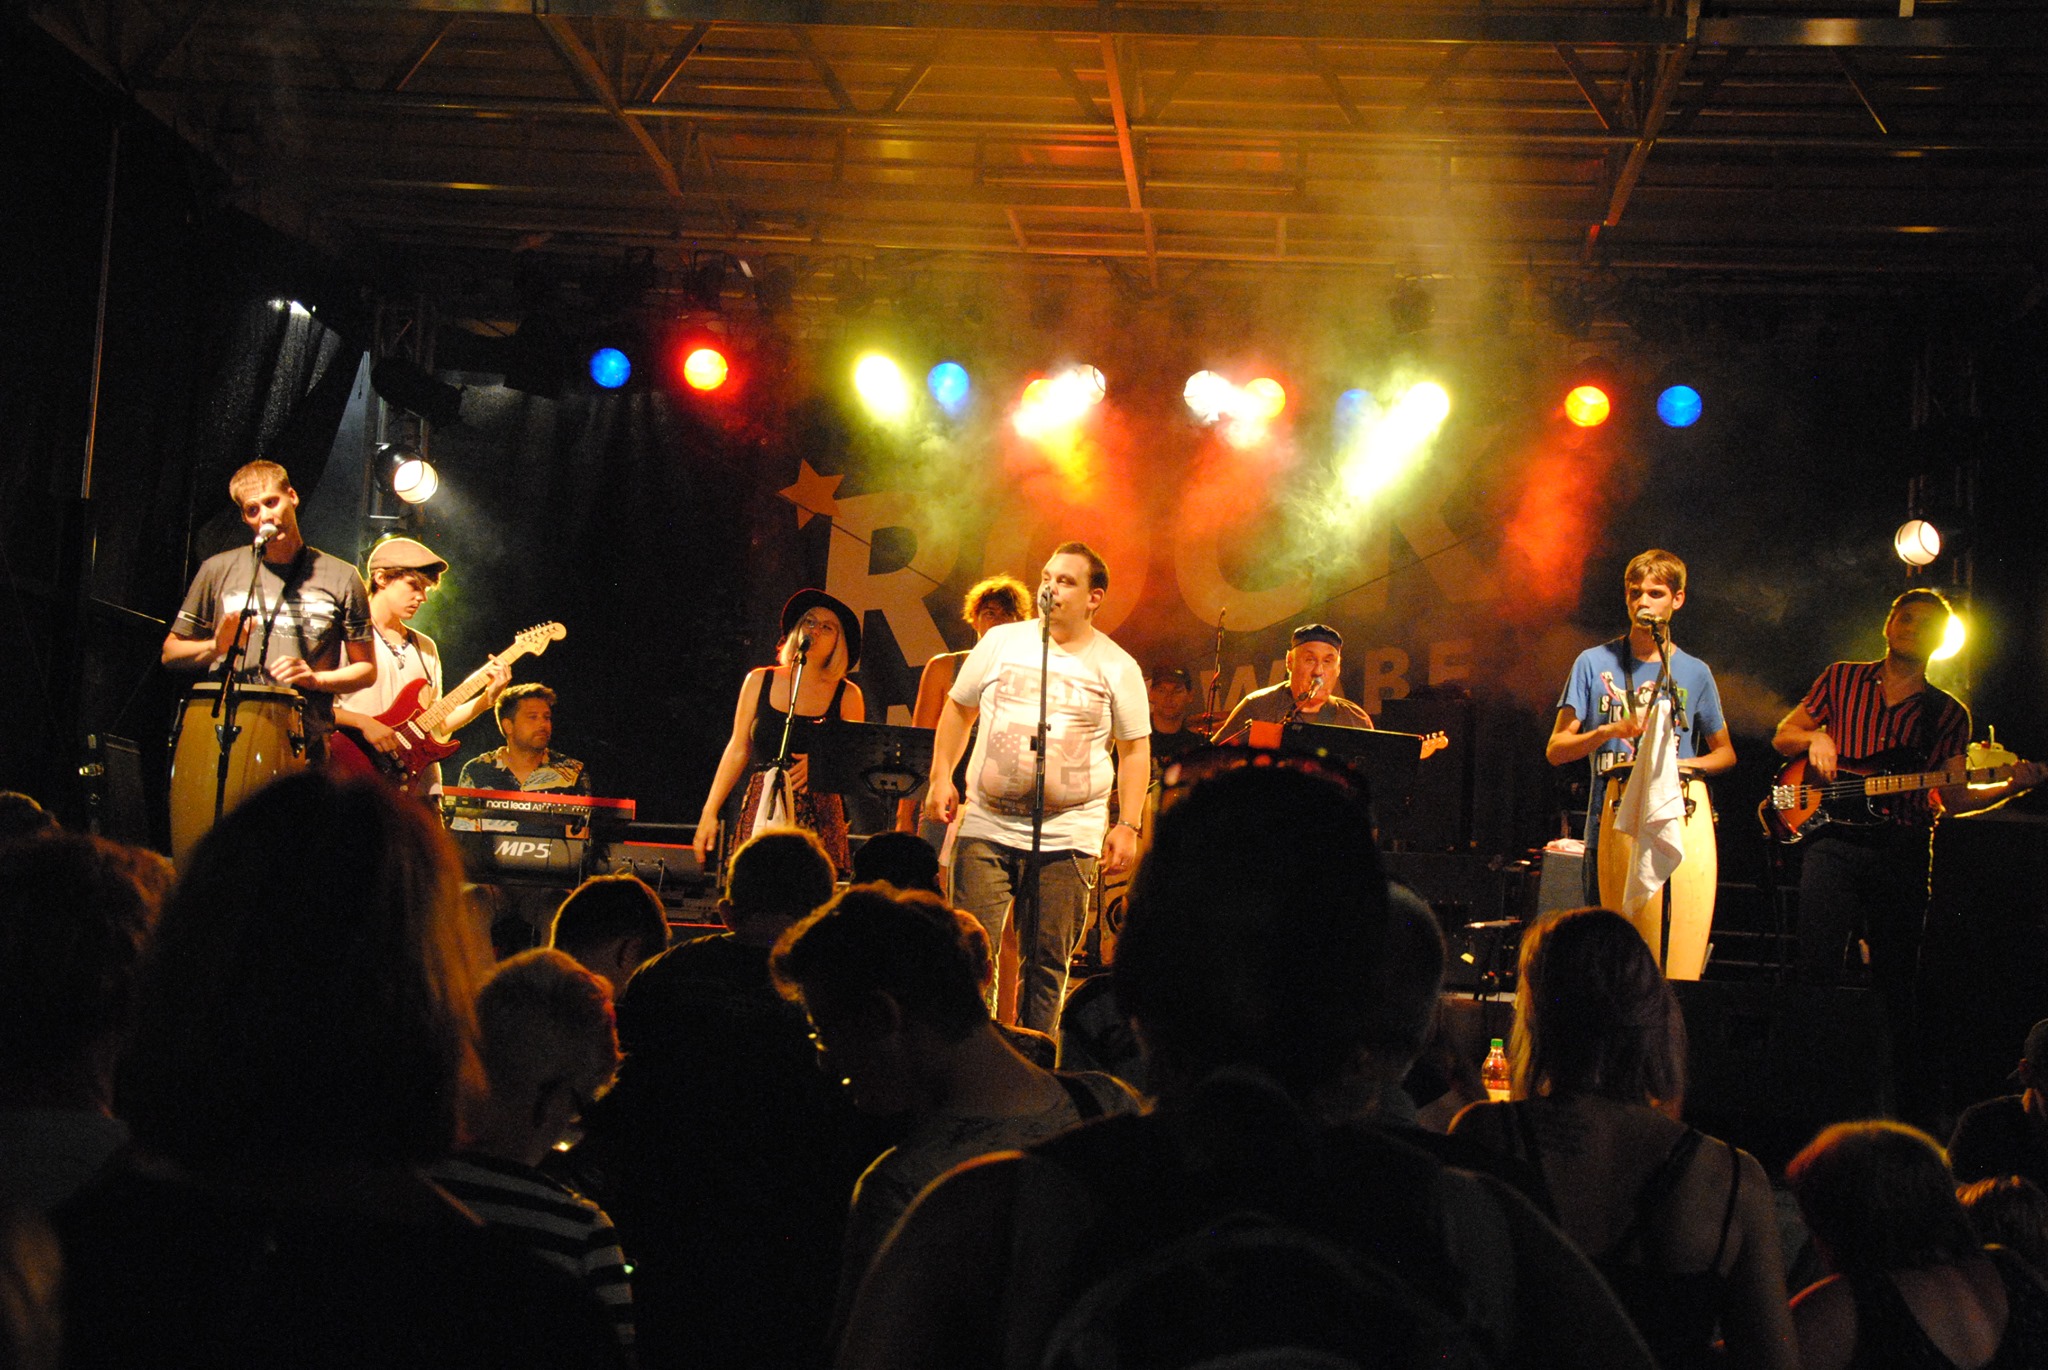 Die Band The Mix live auf der Bühne bei einem Auftritt mit buntem Scheinwerferlicht im Hintergrund